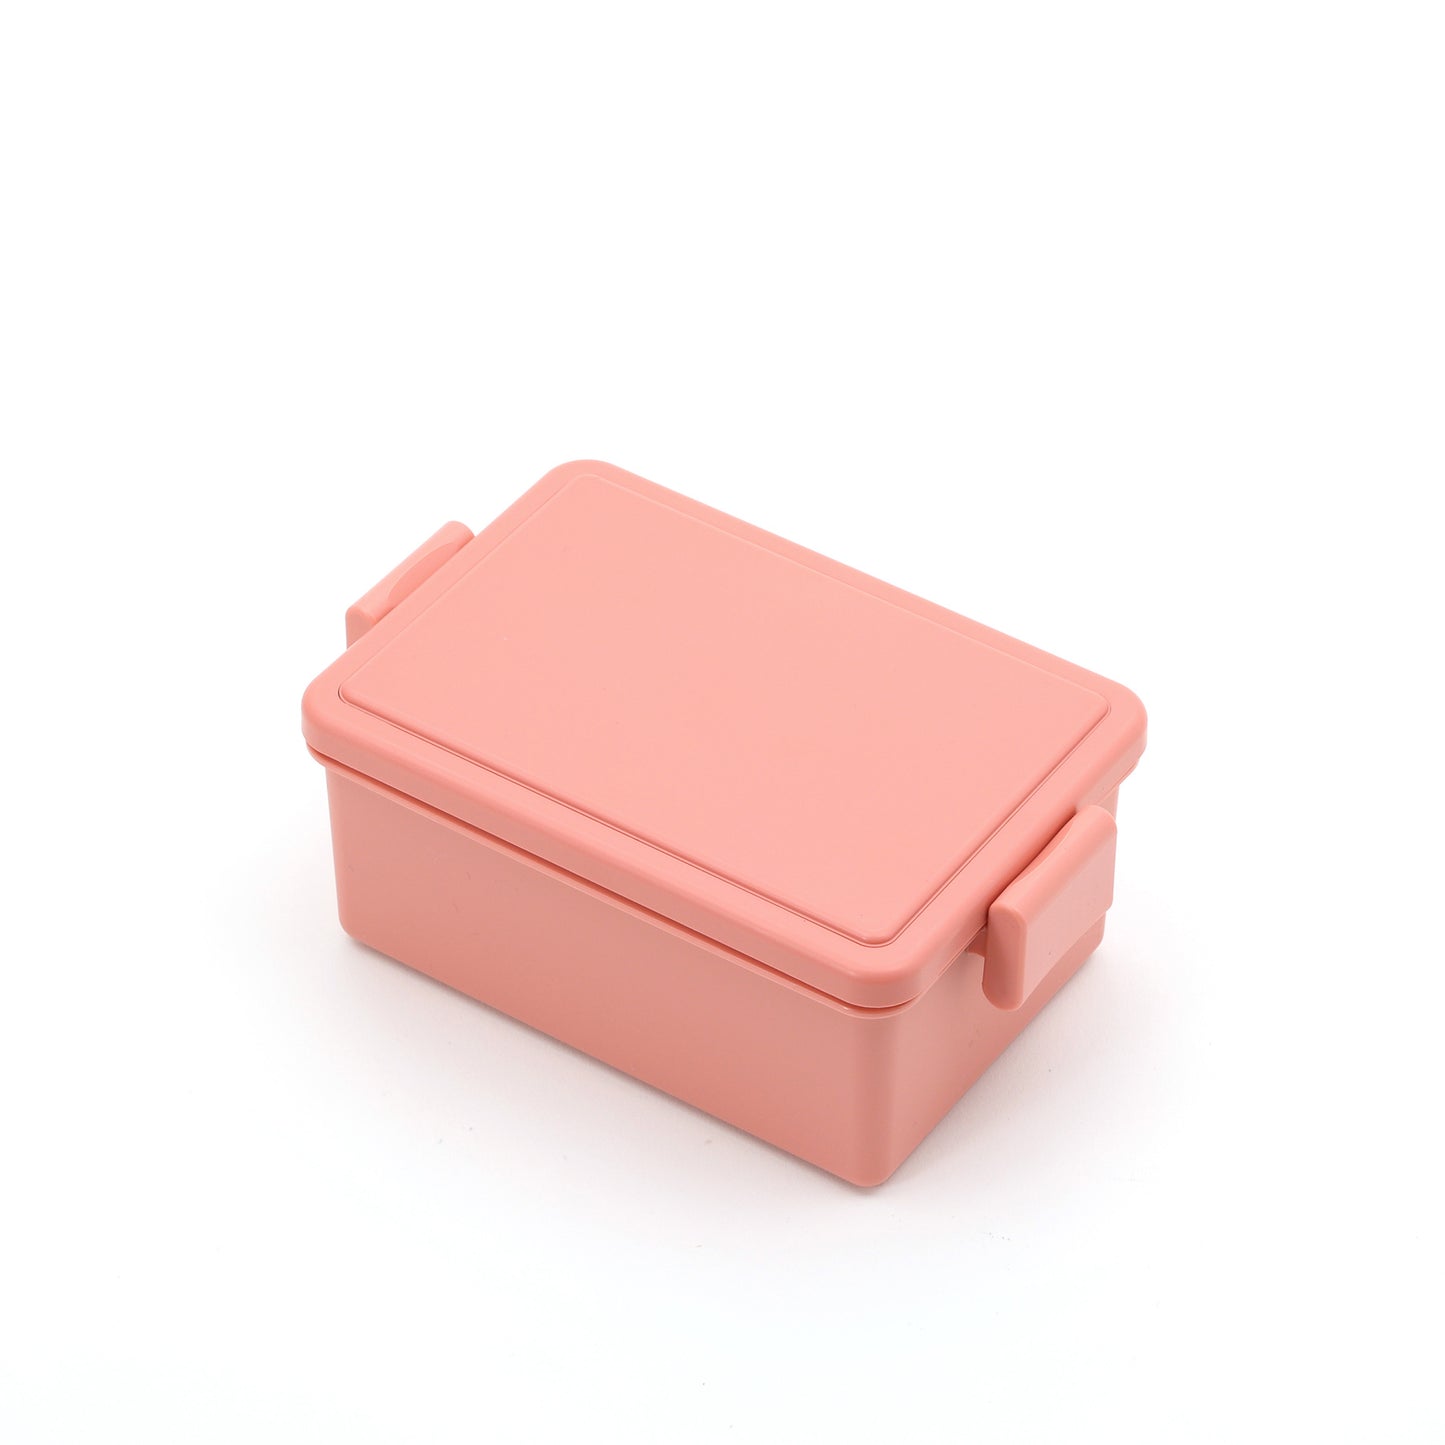 Gel-Cool Bento | Pink, 400 mL